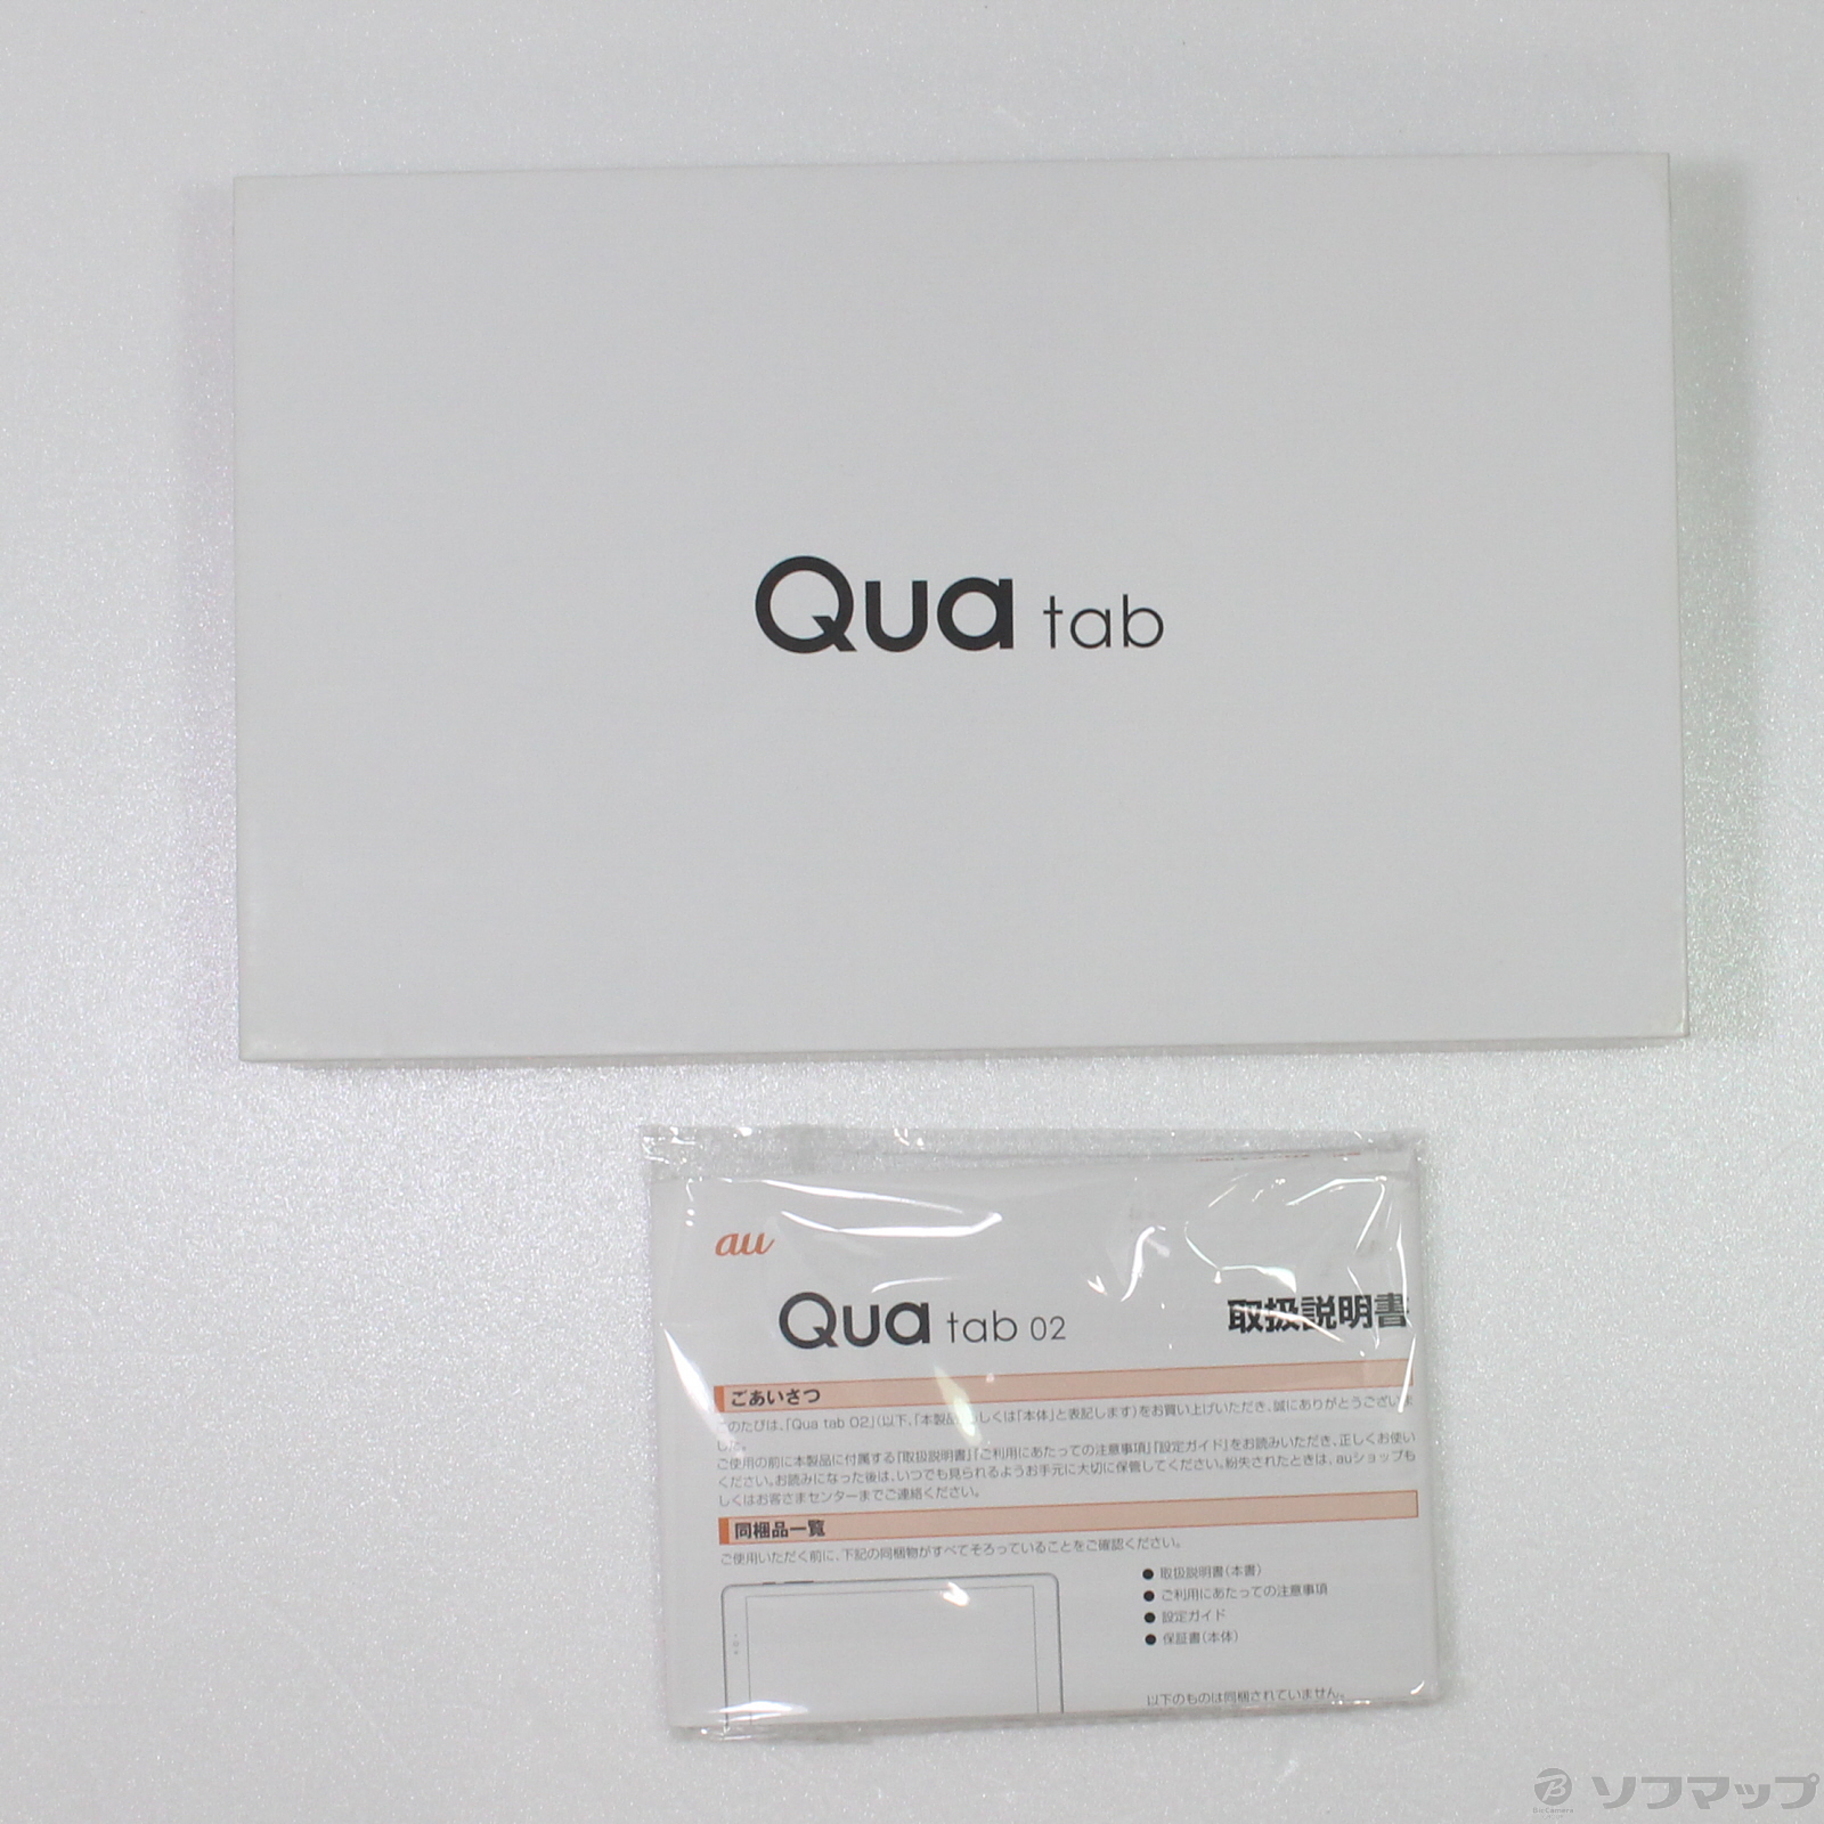 【ほぼ新品】Qua tab 02 本体 保証書つきPC/タブレット